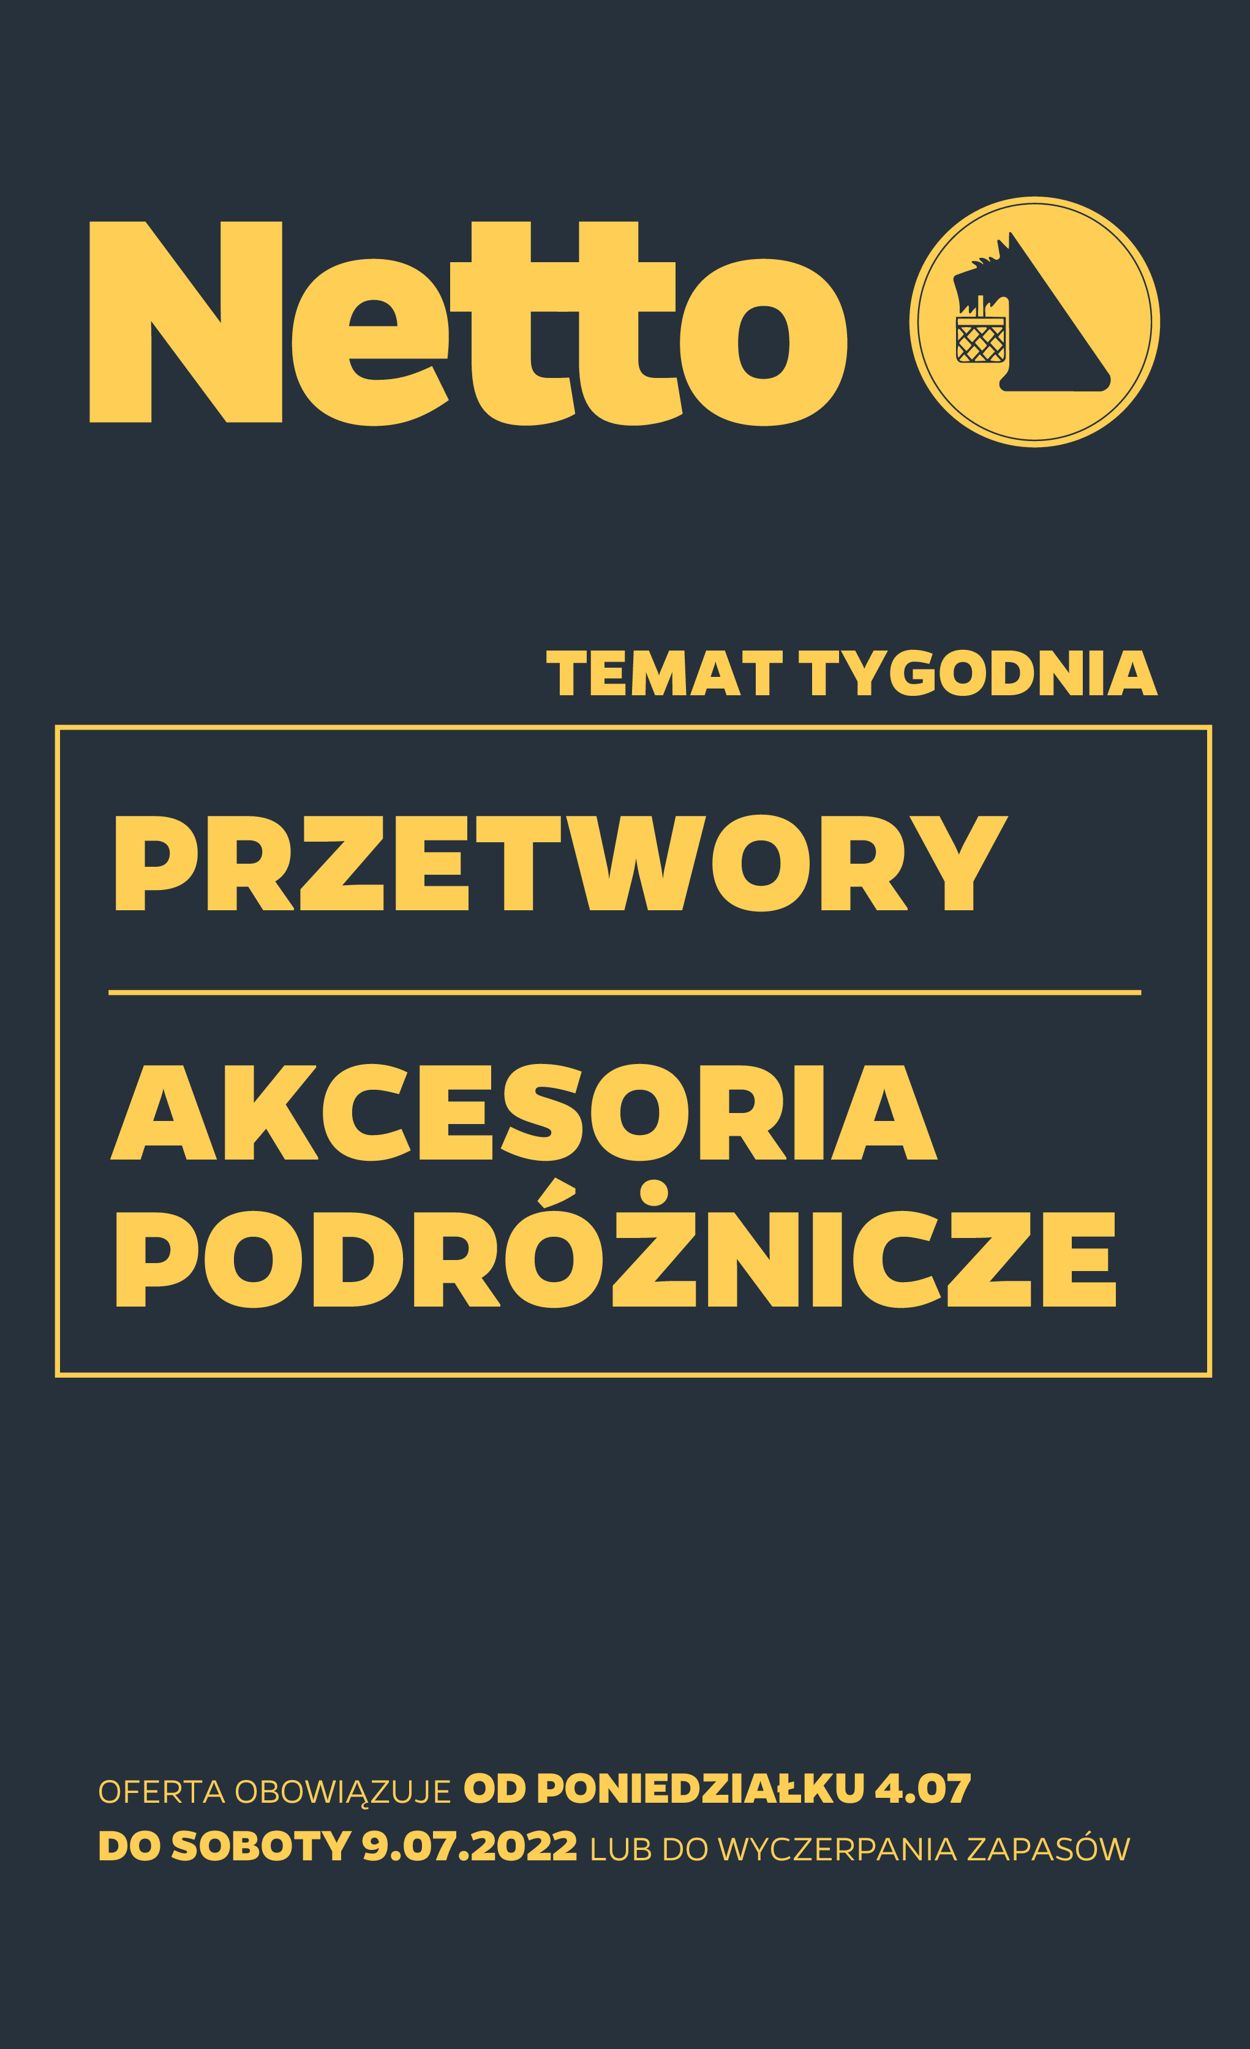 TESCO Gazetka od 04.07.2022